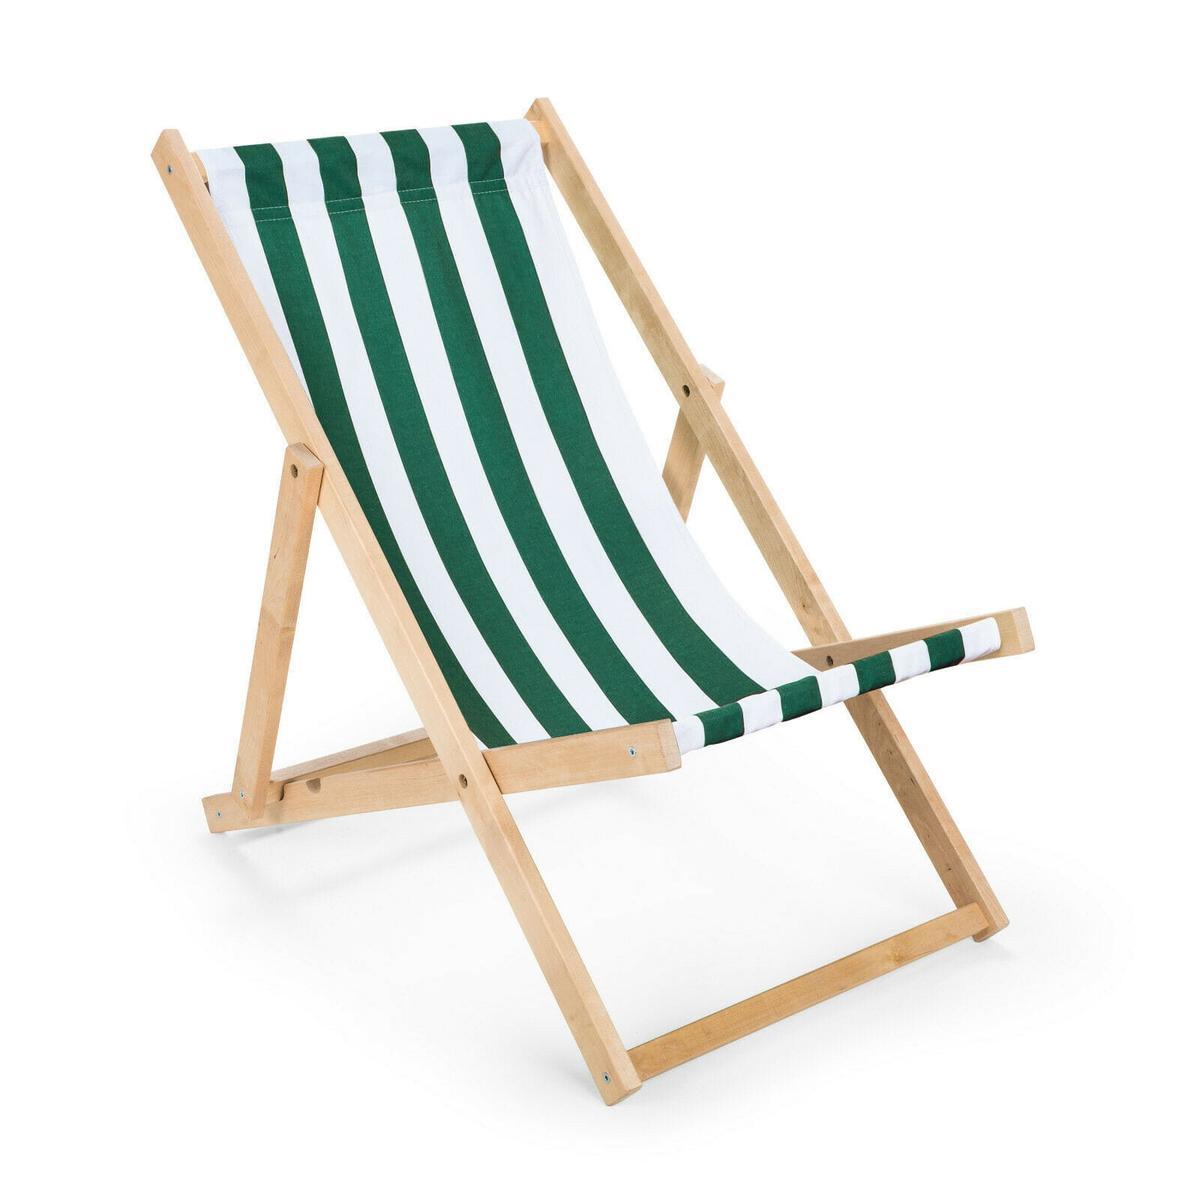 Leżak drewniany 47x112 cm ogrodowy plażowy do ogrodu pasy biało-zielone 0 Full Screen